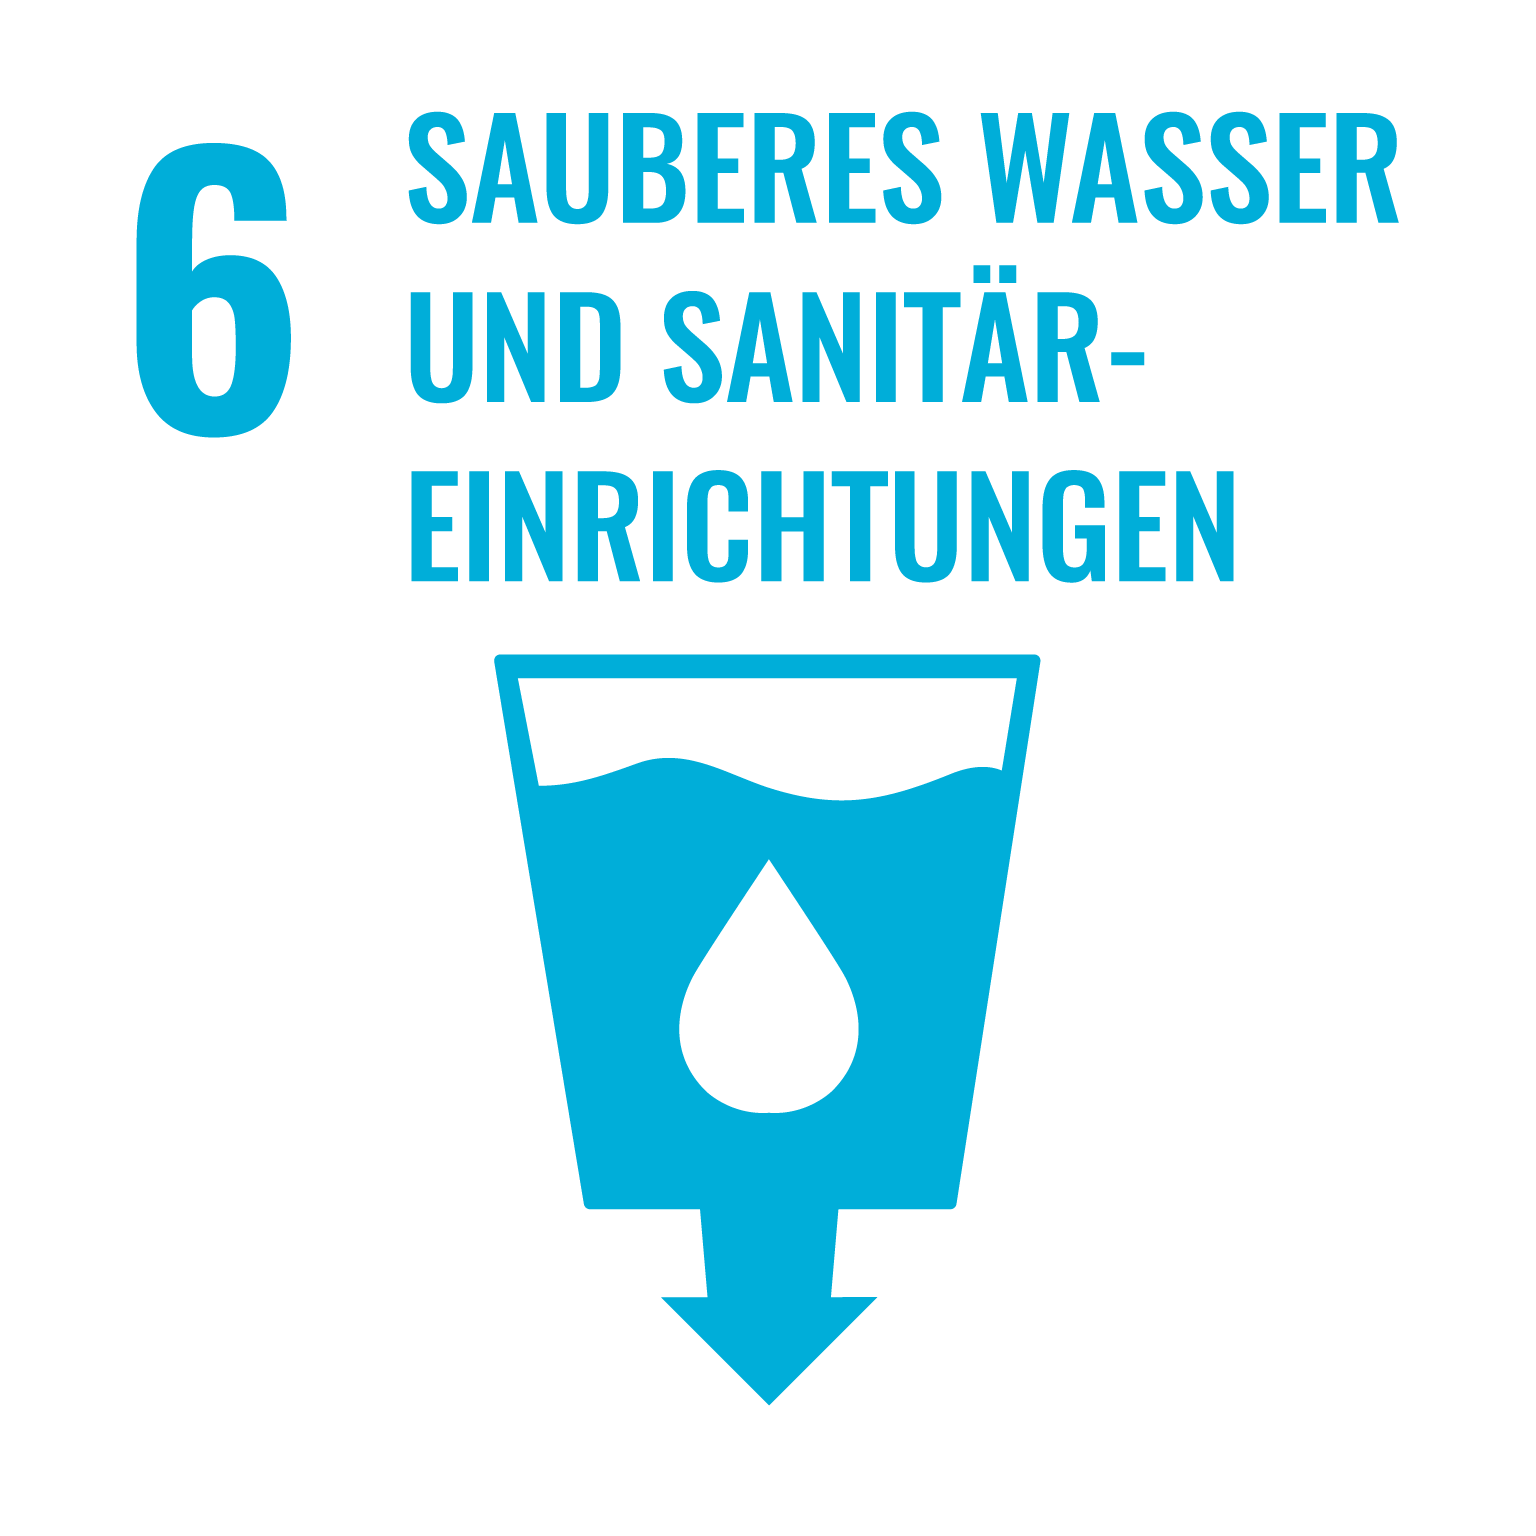 6. Sauberes Wasser und Sanitäreinrichtungen